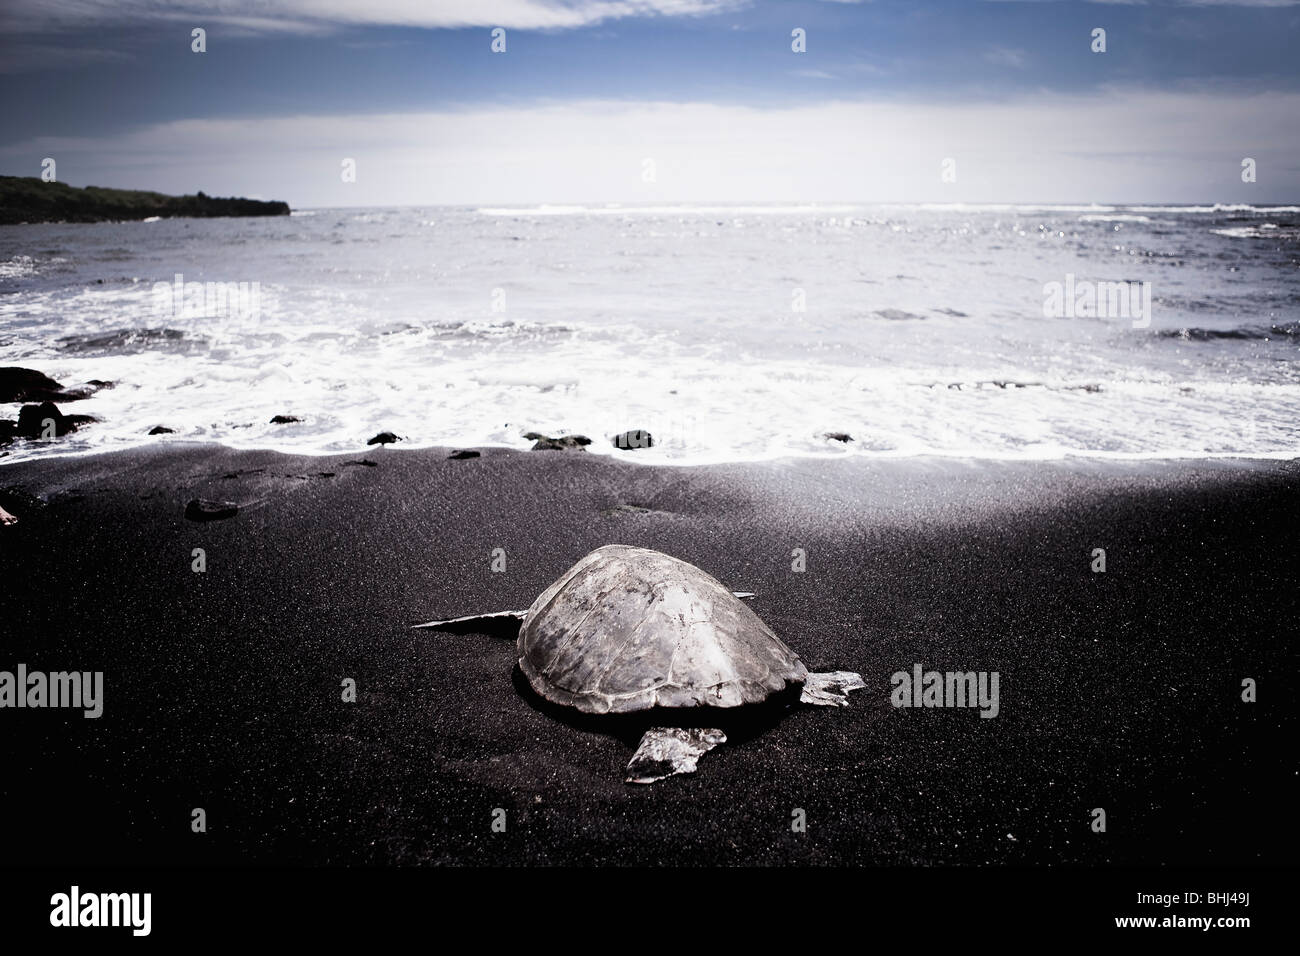 Sorties en mer des tortues marines sur la plage noire Banque D'Images